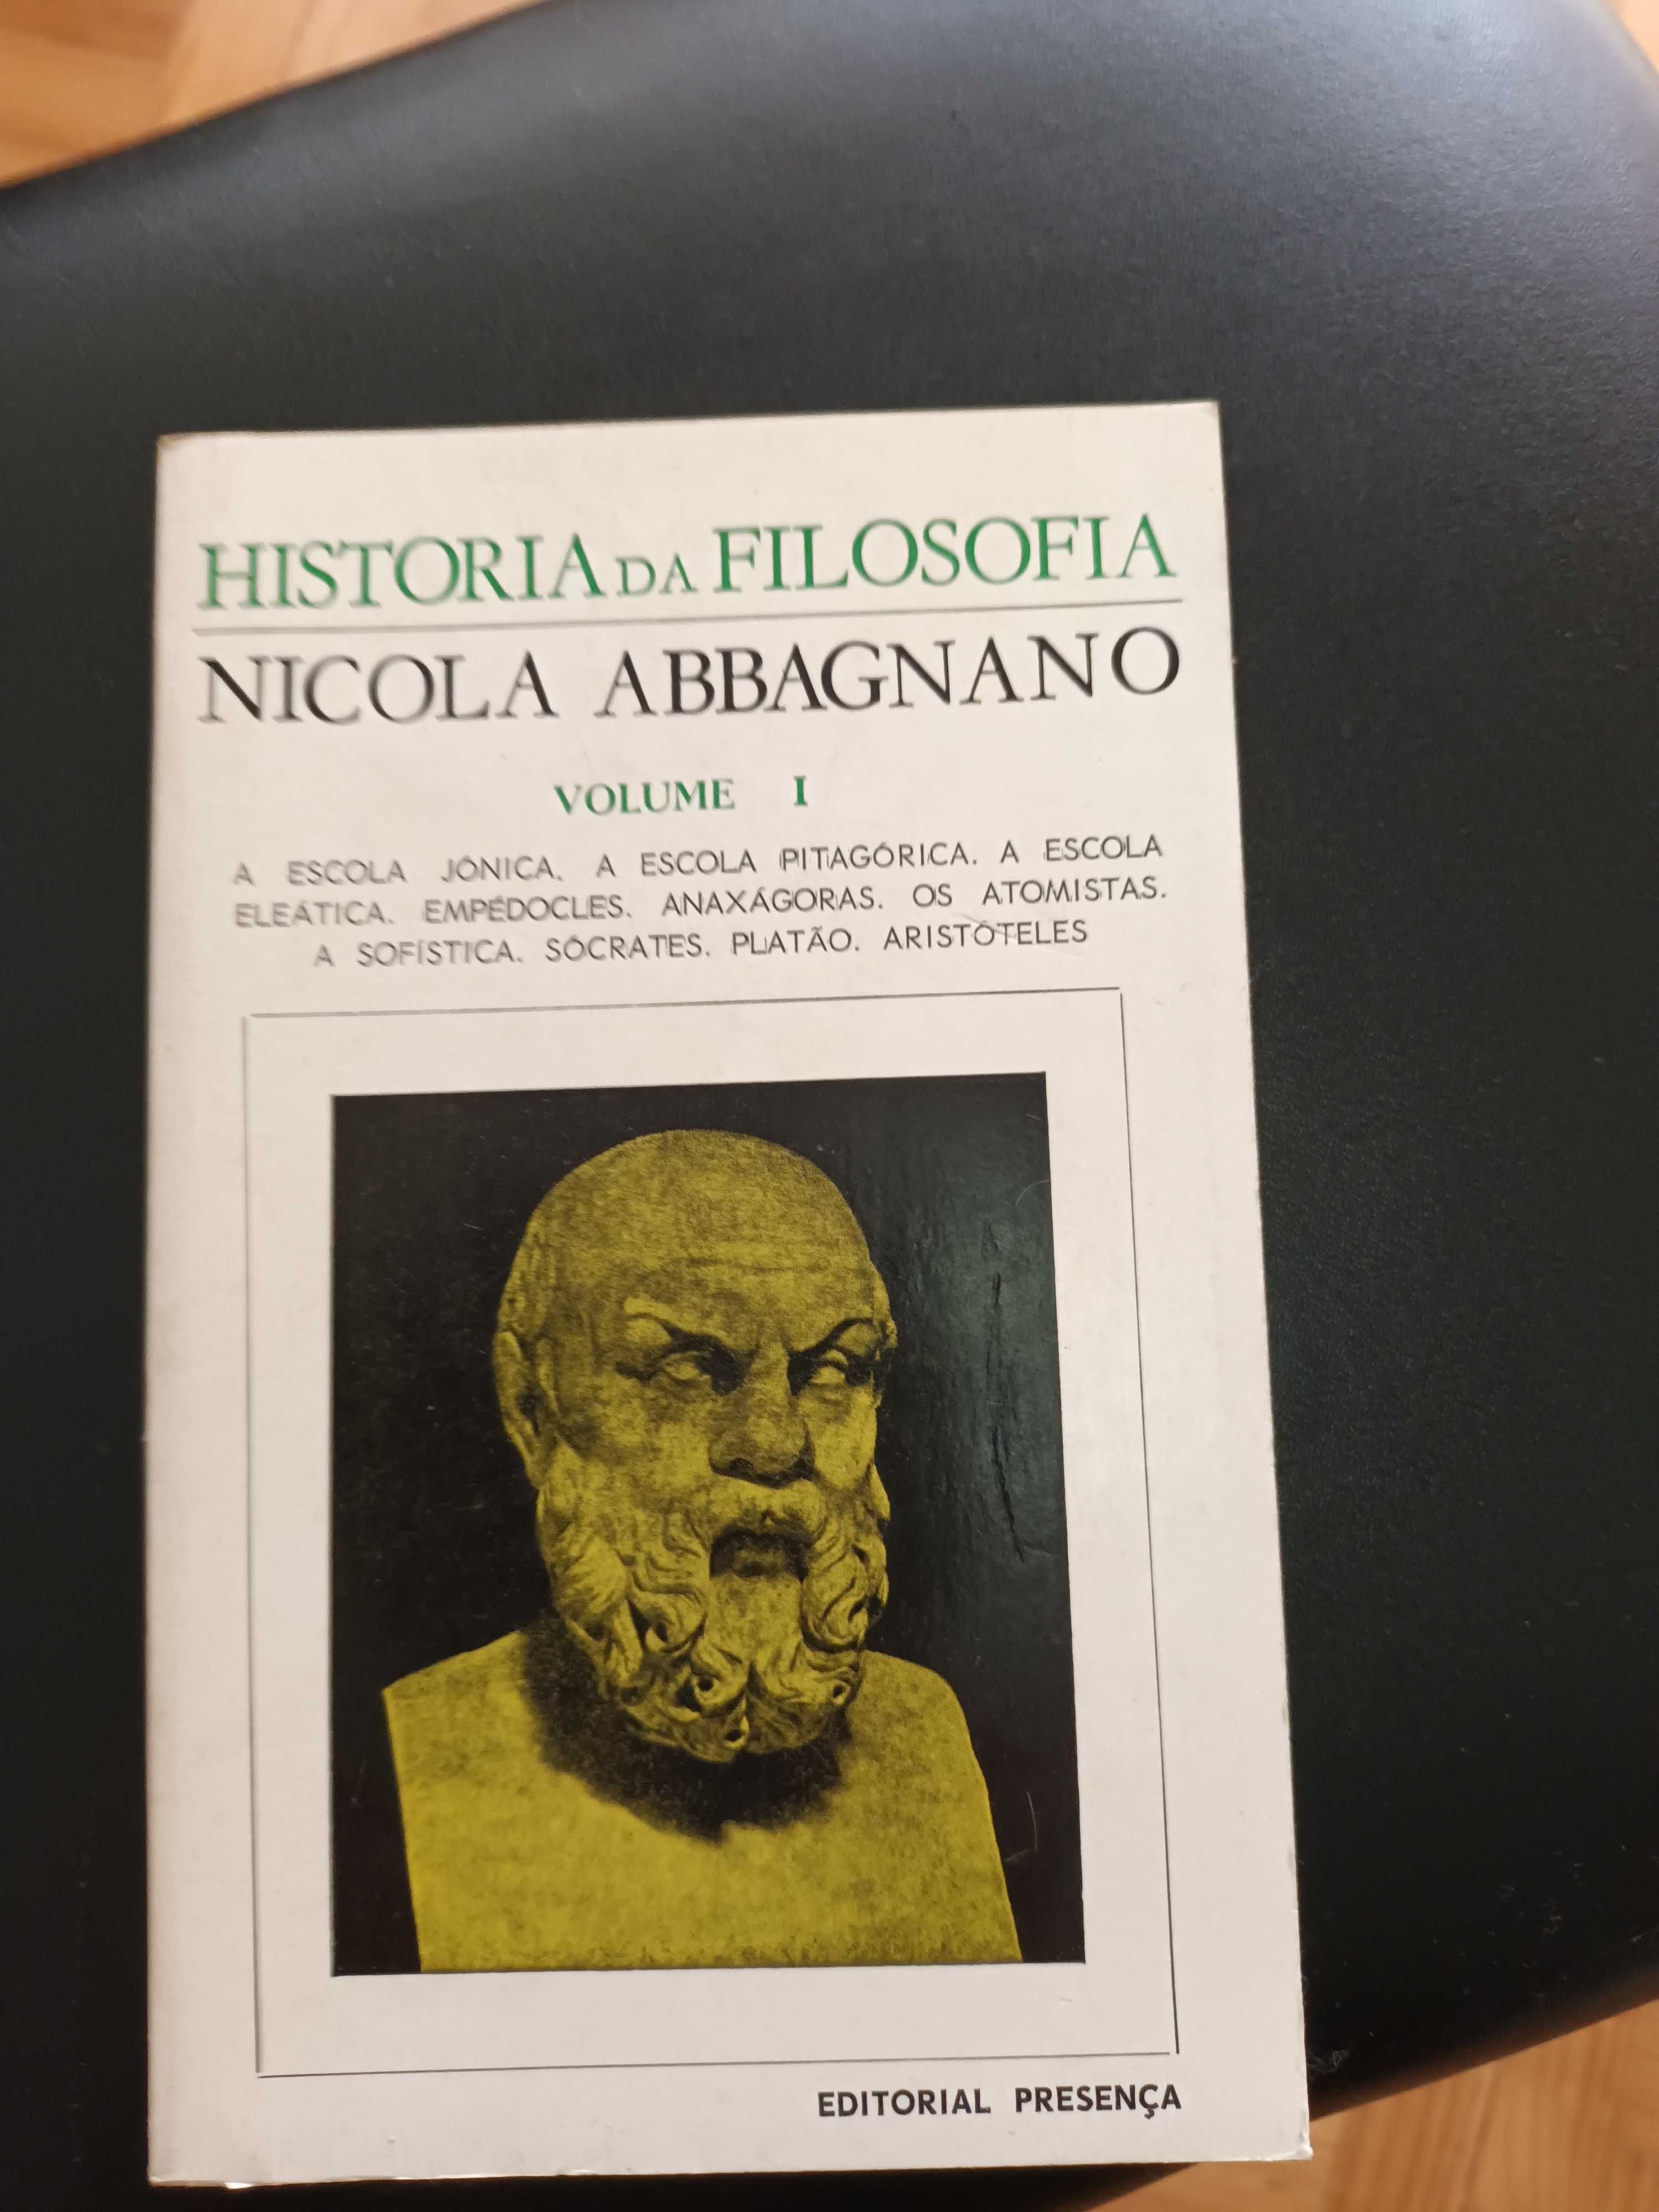 Livro de filosofia "História  da Filosofia"